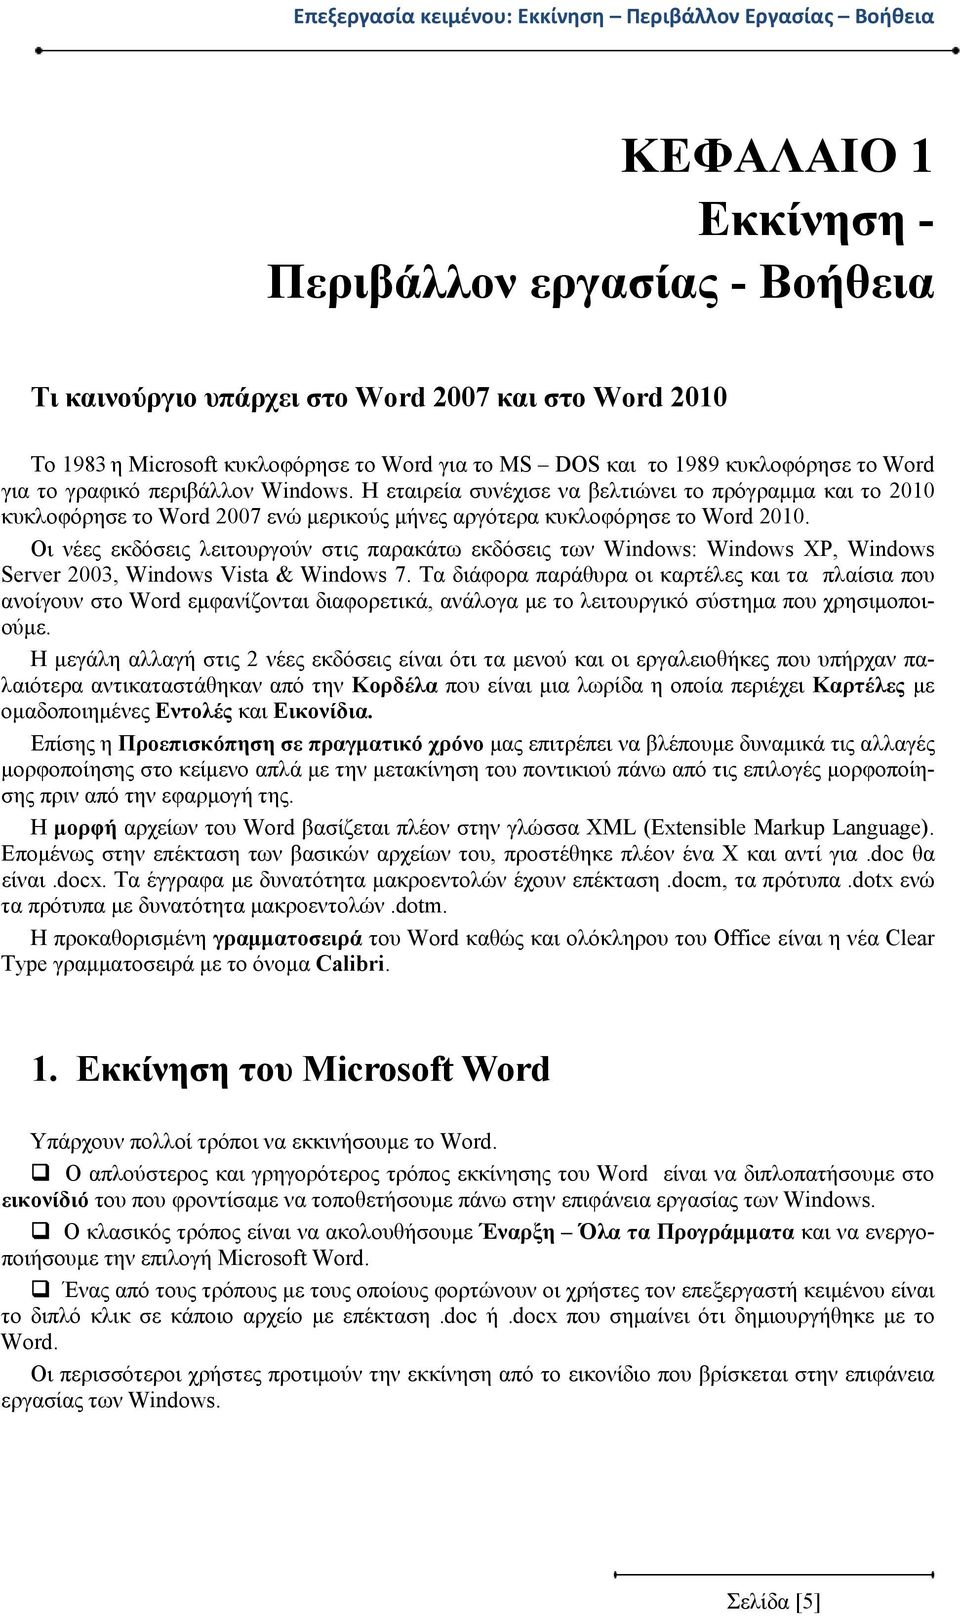 Η εταιρεία συνέχισε να βελτιώνει το πρόγραμμα και το 2010 κυκλοφόρησε το Word 2007 ενώ μερικούς μήνες αργότερα κυκλοφόρησε το Word 2010.